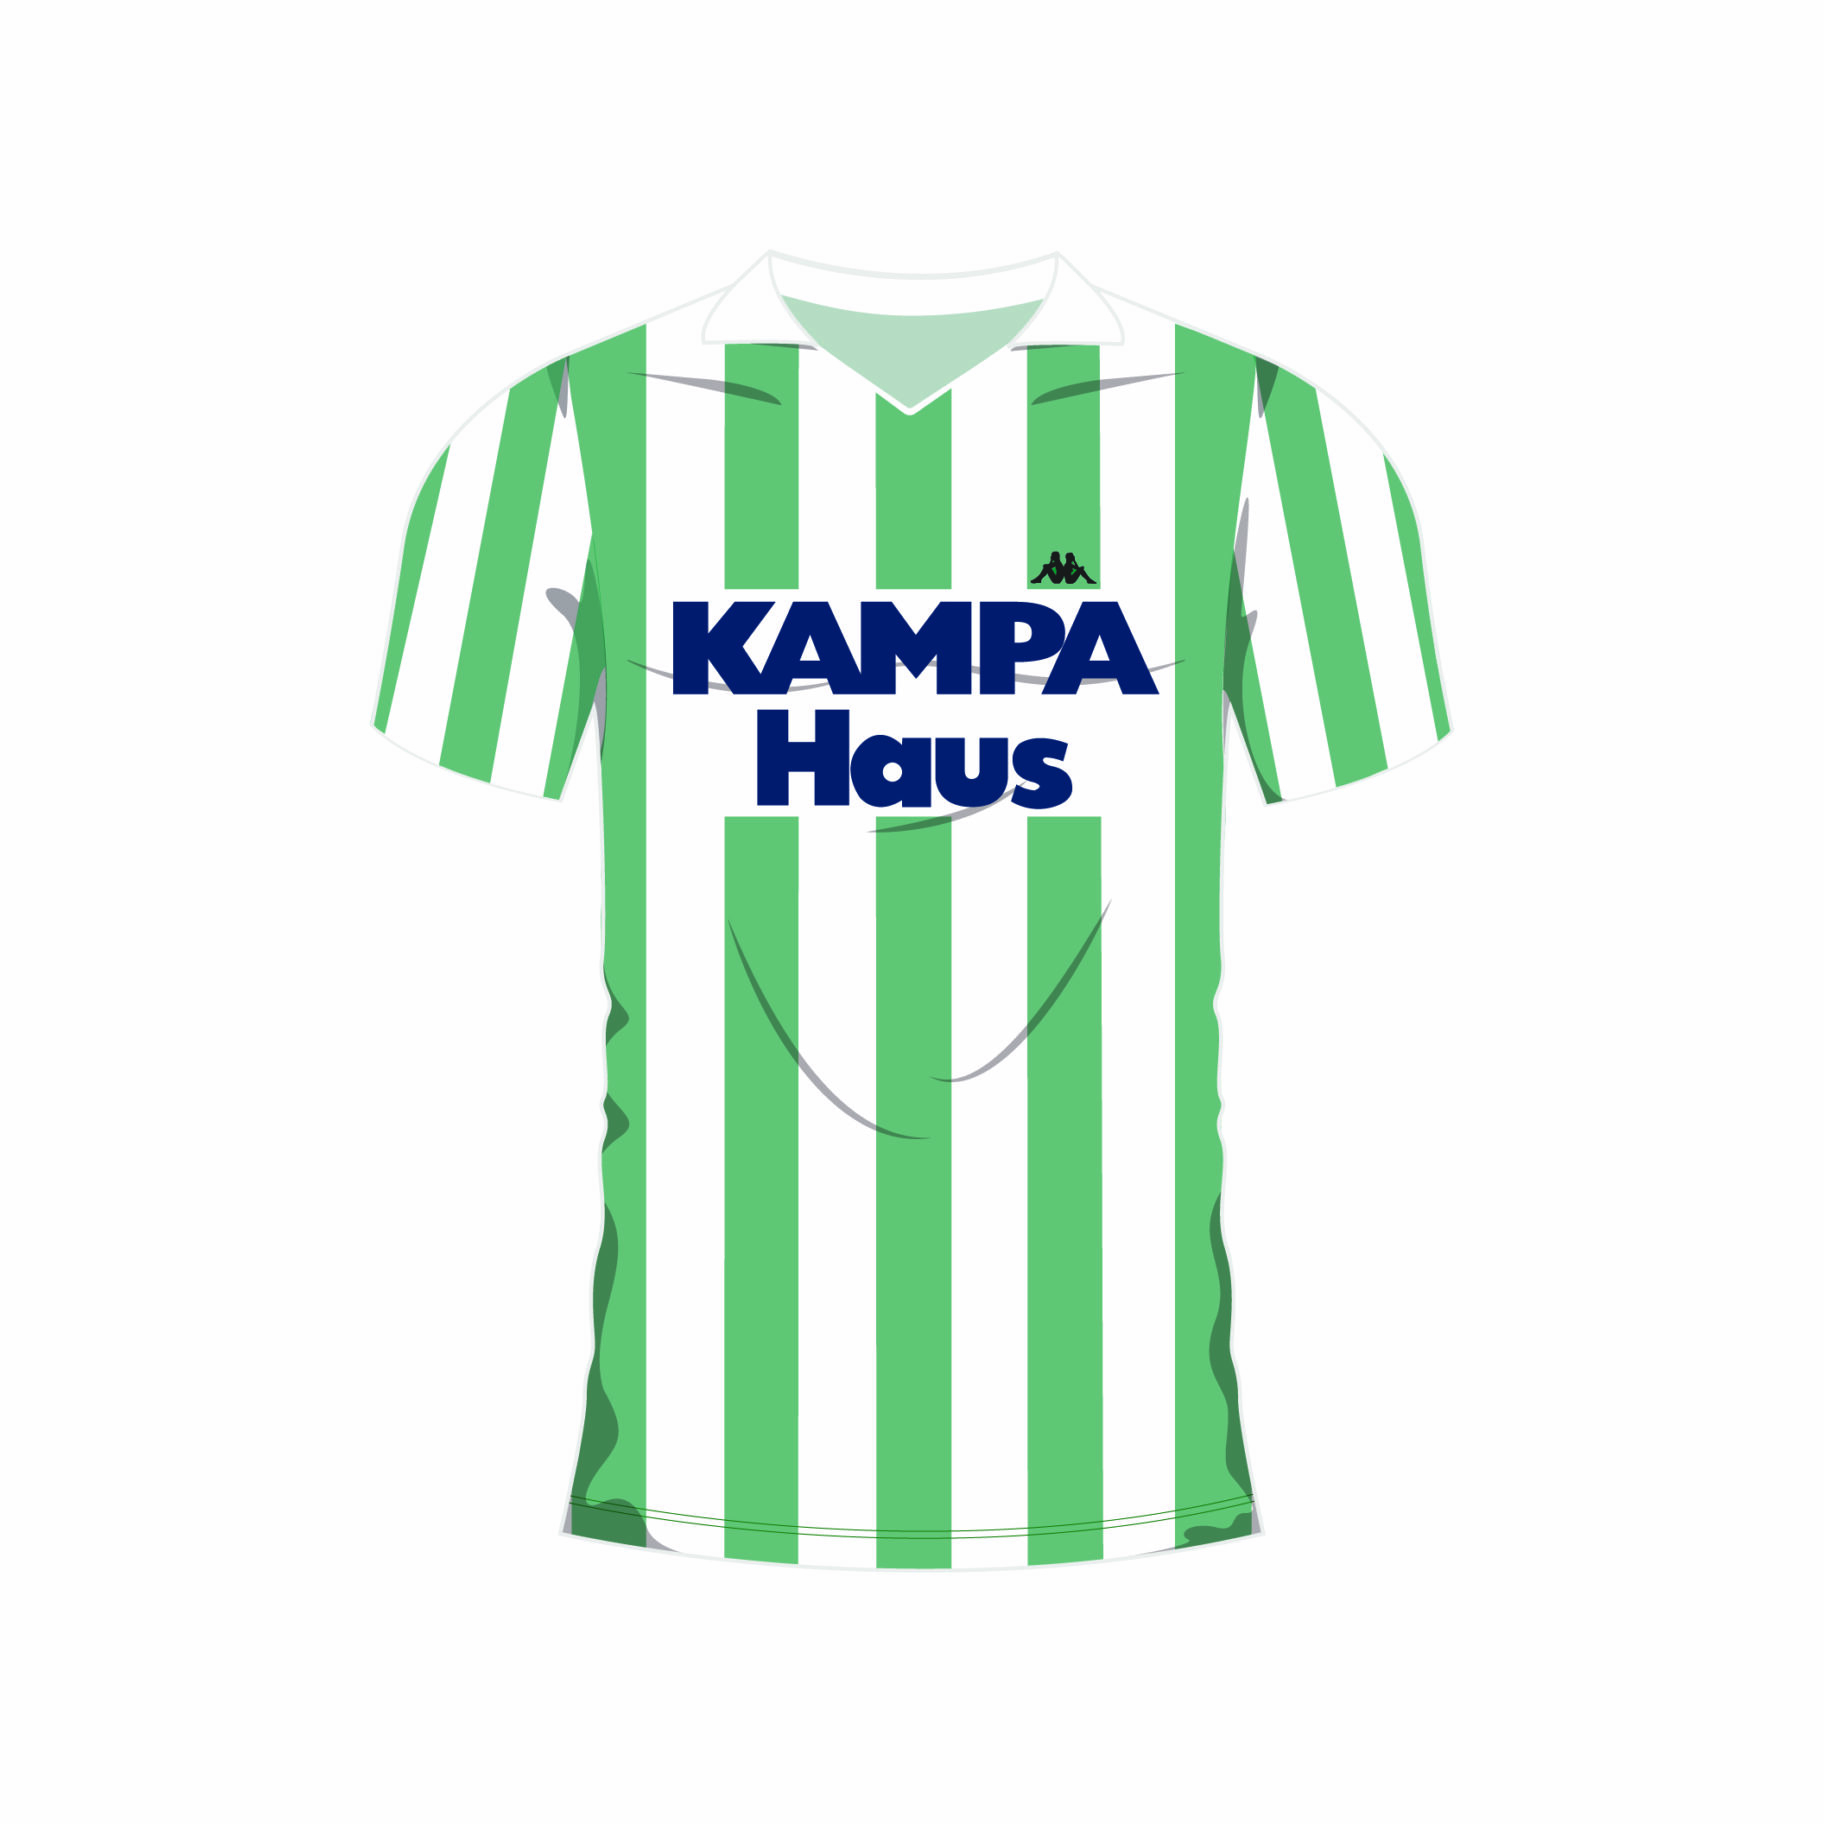 Illustrierte Nachbildung eines gruen-weiß gestreiften SK Rapid Trikots, mit Kappa-Logo und weiß-blauem Kampa Haus Sponsoren-Aufdruck.